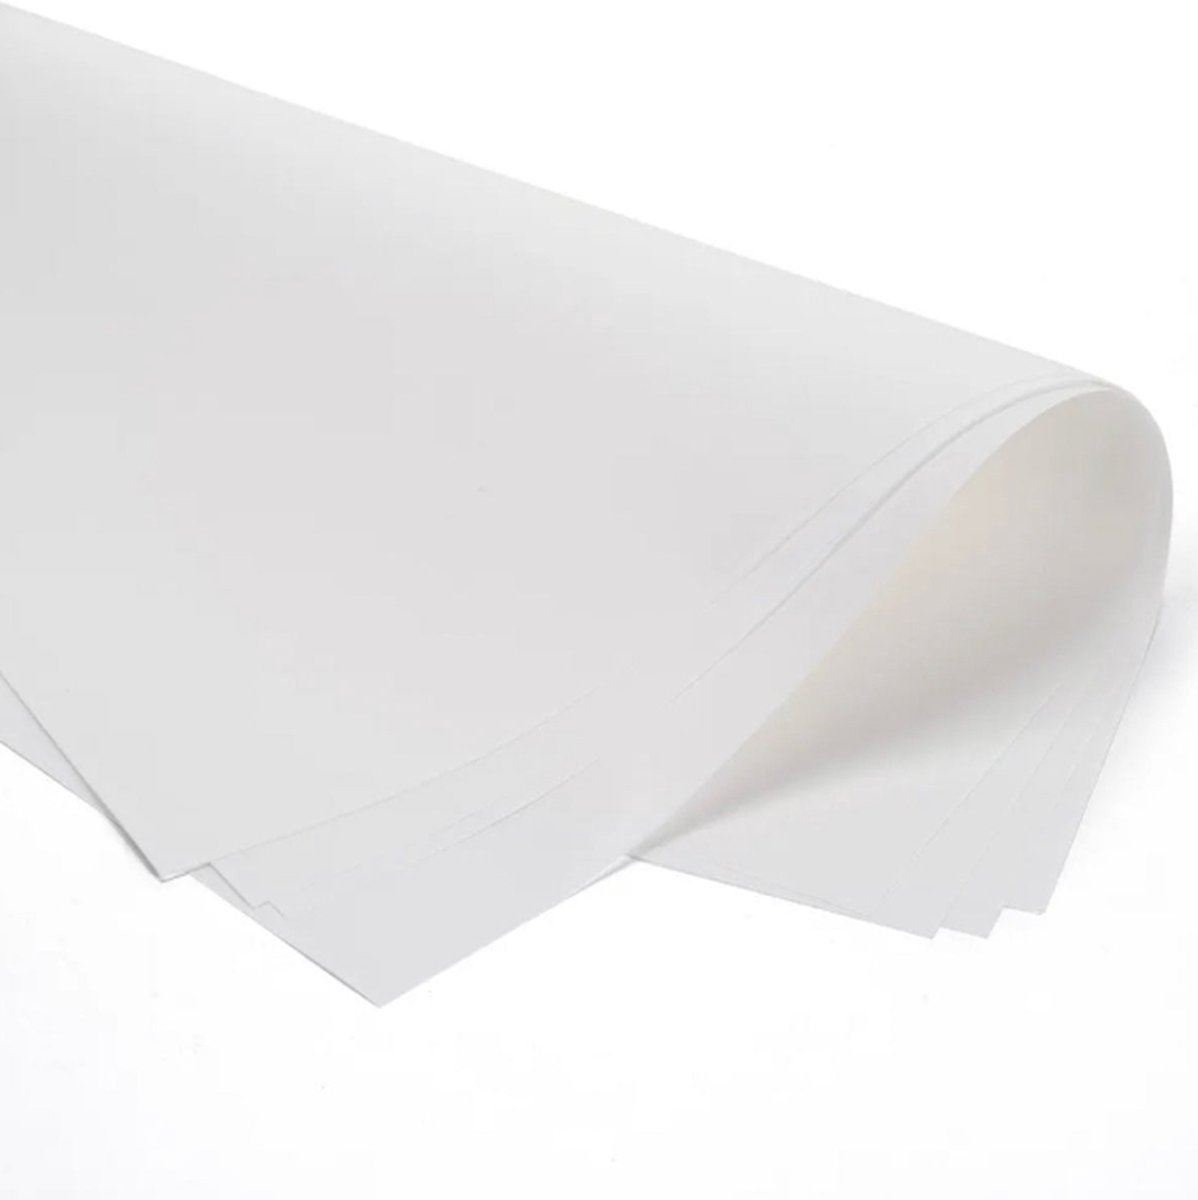 Perkamentpapier 25 cm x 32,5 cm - 10 KG - vetvrij papier - papier - voedsel - kaas - vlees - doos 10 kg